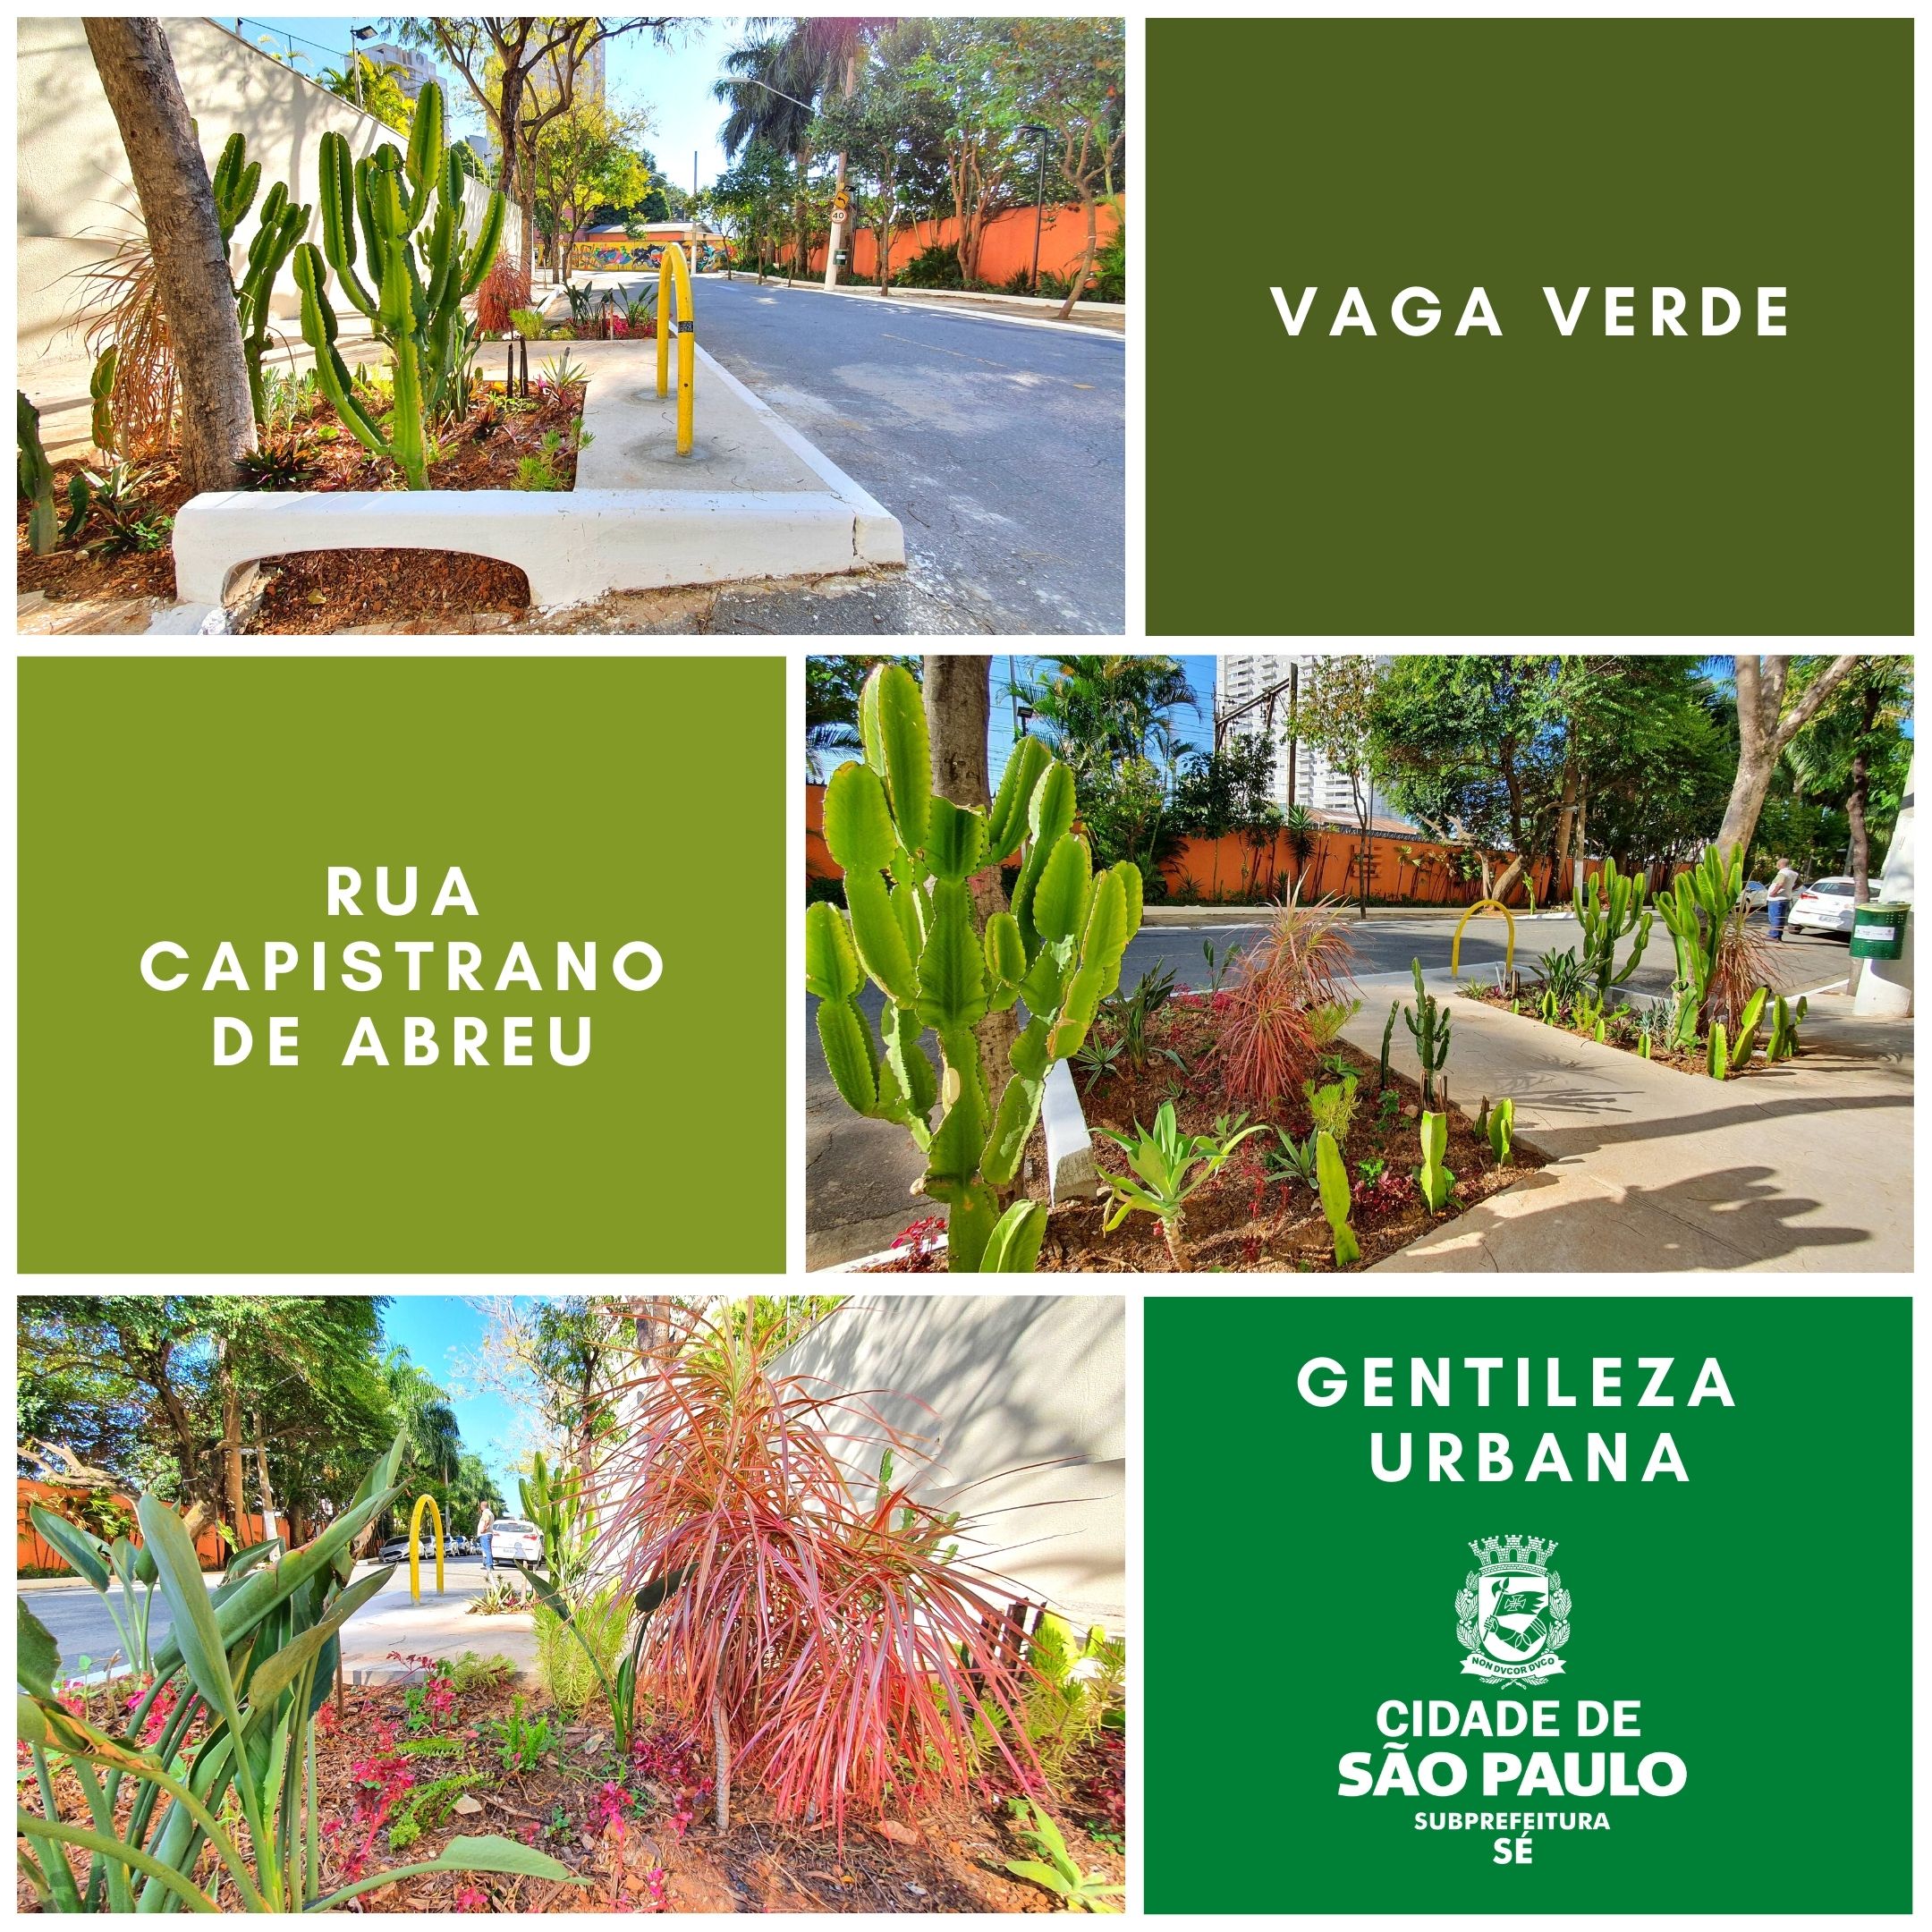 Três fotos mostram o jardim da Capistrano de Abreu. Há o logotipo da Subprefeitura Sé.